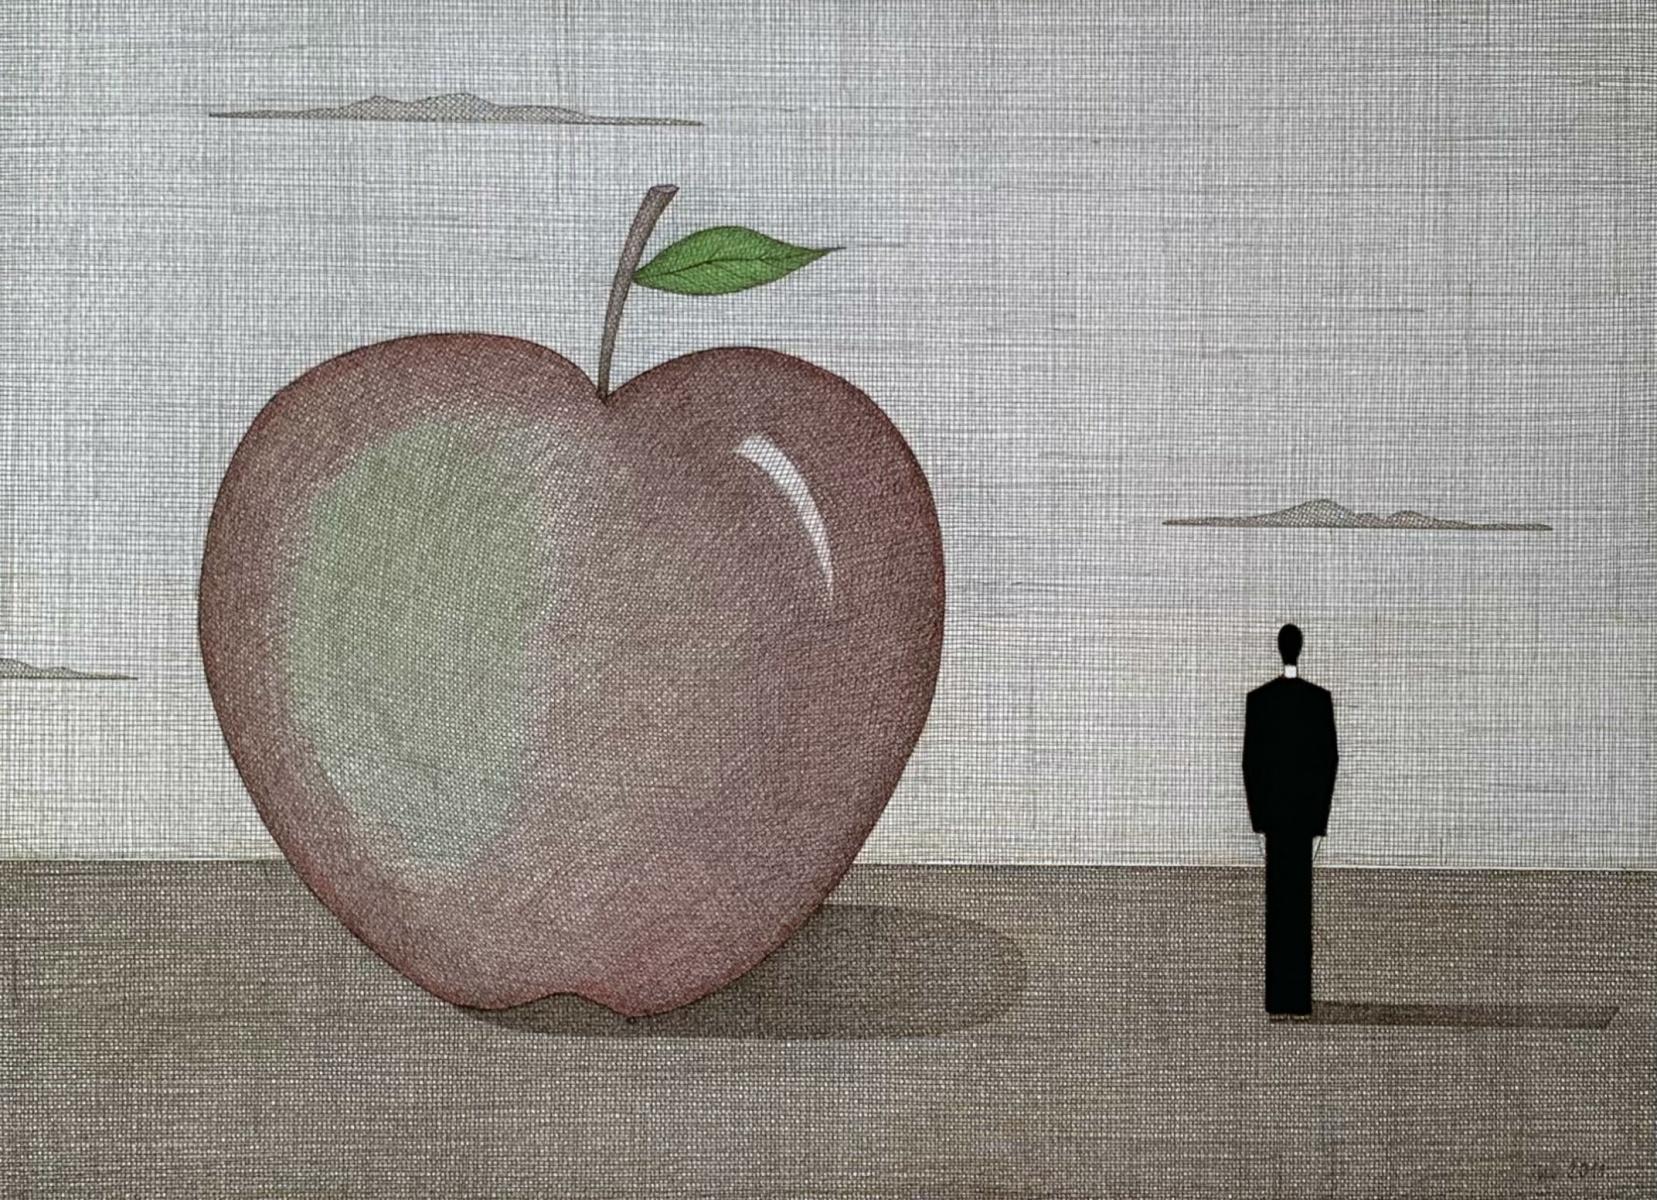 Paysage avec une pomme rouge - Impression figurative, surréalisme, minimalisme